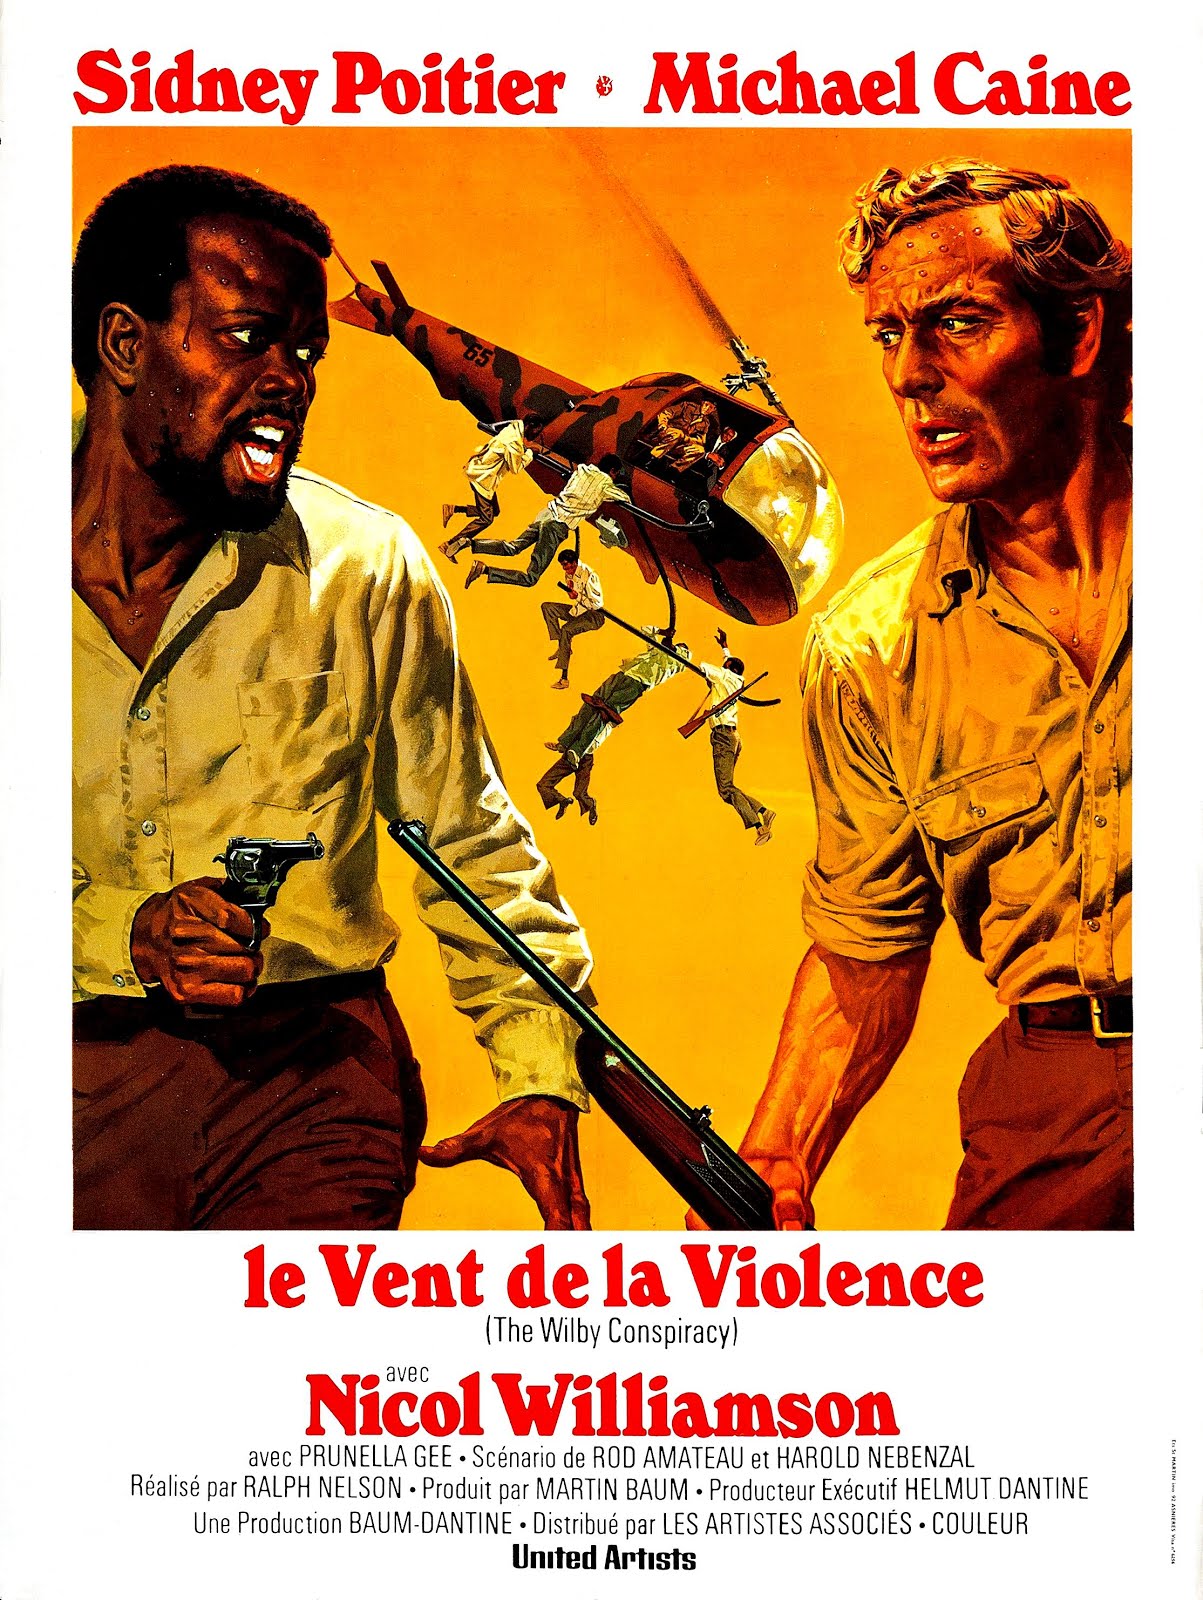 Le vent de la violence (1974) Ralph Nelson - The Wilby conspiracy (18.02.1974 / 05.1974)